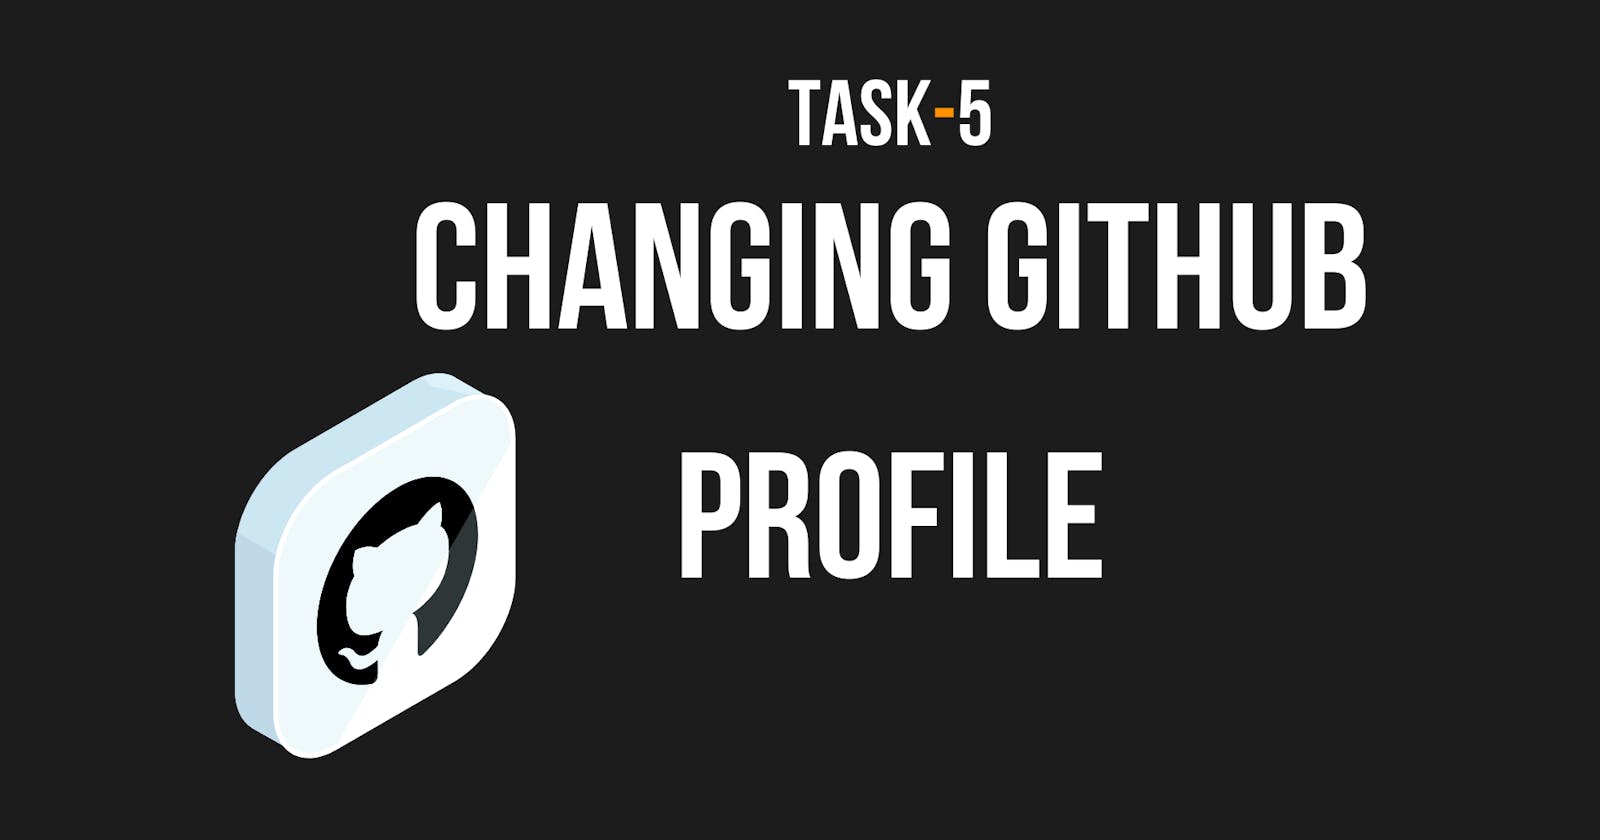 Changing GitHub Profile | Task - 5